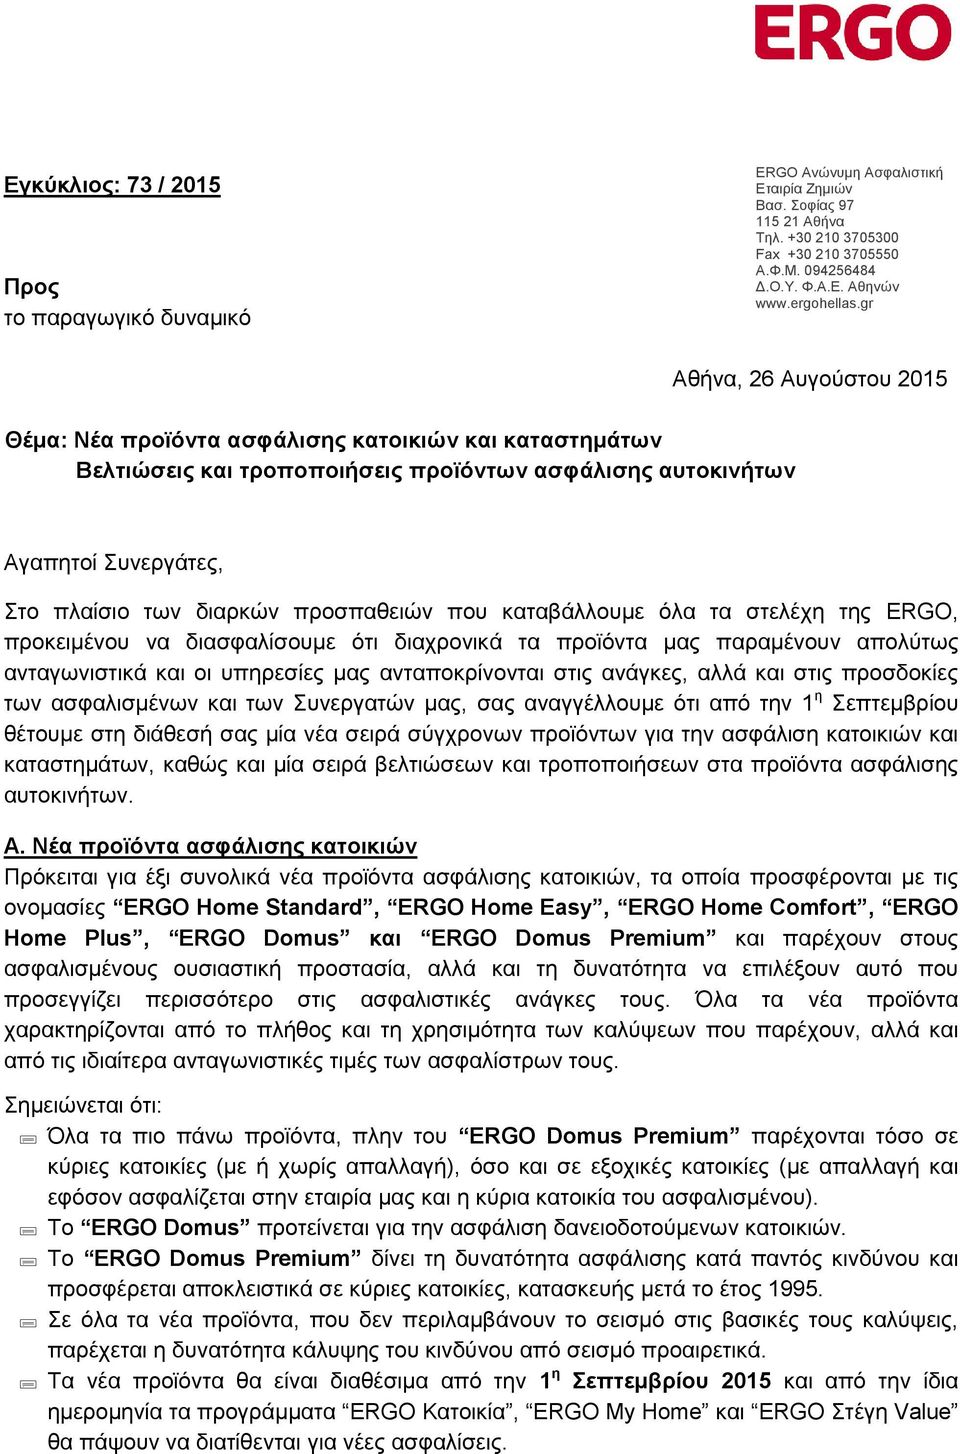 gr Θέμα: Νέα προϊόντα ασφάλισης κατοικιών και καταστημάτων Βελτιώσεις και τροποποιήσεις προϊόντων ασφάλισης αυτοκινήτων Αθήνα, 26 Αυγούστου 2015 Αγαπητοί Συνεργάτες, Στο πλαίσιο των διαρκών